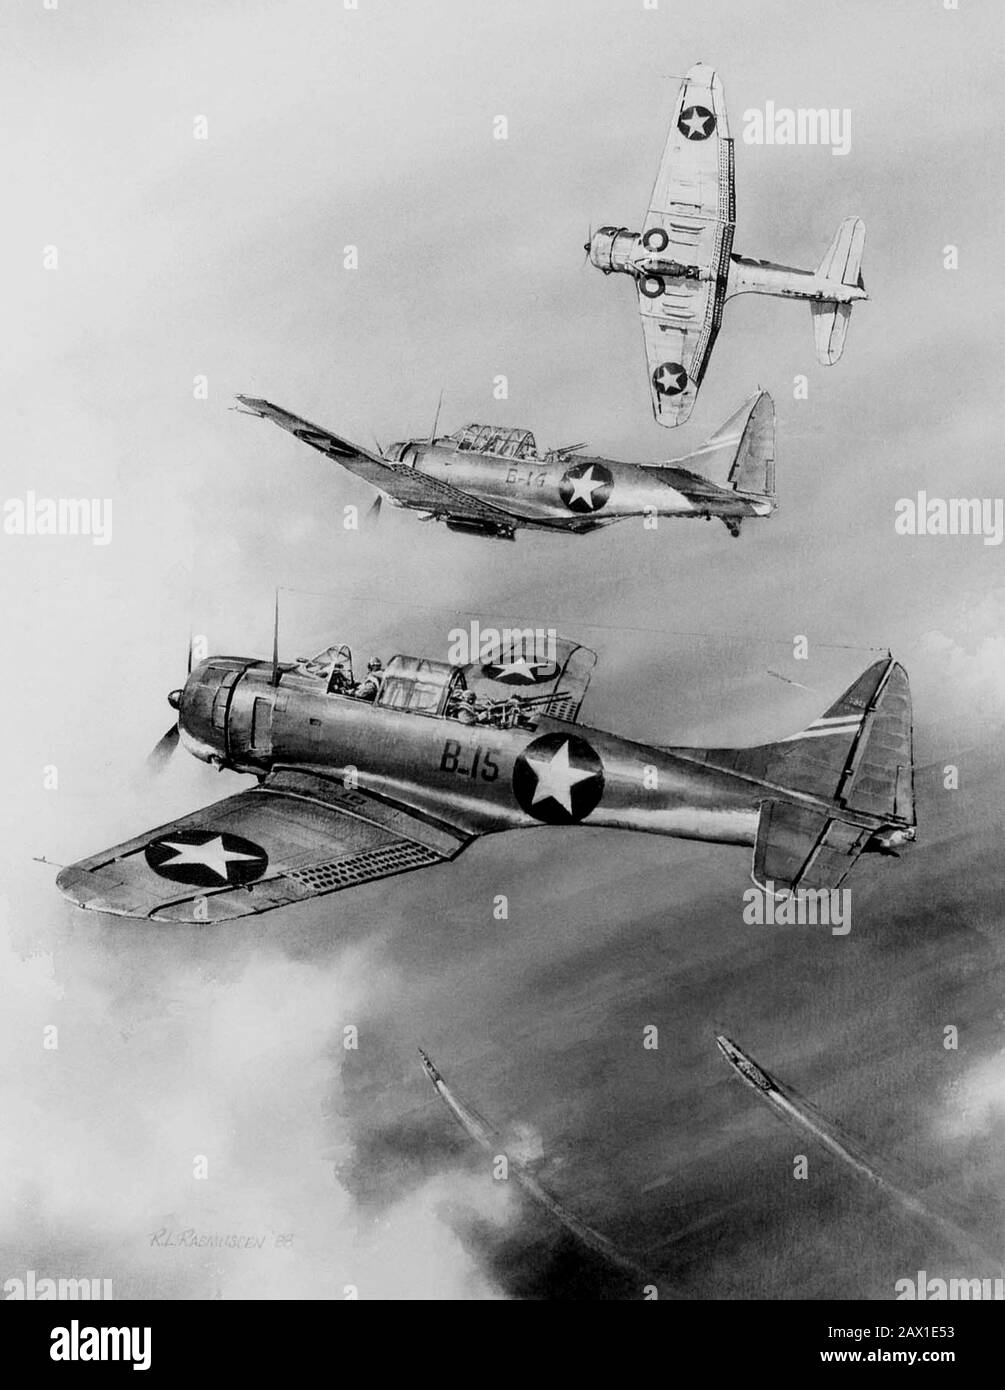 1942 , 6 JUIN , ÉTATS-UNIS : BATAILLE DE MIDWAY . ŒUVRES d'ART en aquarelle du capitaine Robert L. Rasmussen, USN (Ret) au Musée national de l'aviation navale de la Marine américaine . Les bombardiers de plongée Daunless Douglas SBD-3 de la marine américaine commencent leur attaque contre les transporteurs japonais à Midway, le 4 juin 1942. - WORLD WAR II - WWII - SECONDA GUERRA MONDIALE - foto storiche storica - PHOTOS D'HISTOIRE - Stati Uniti d'Amérique - bombardement - nef - Marina - Navy - mare - Sea - attaco aereo - USA - GIAPPONE - GUERRA DEL PACIFICO - OCEANO - OCEAN PACIFIC - BATTAGLIA - BATAILLE - aéroplano - Îles - atoll Midway - la bataille de Mid Banque D'Images